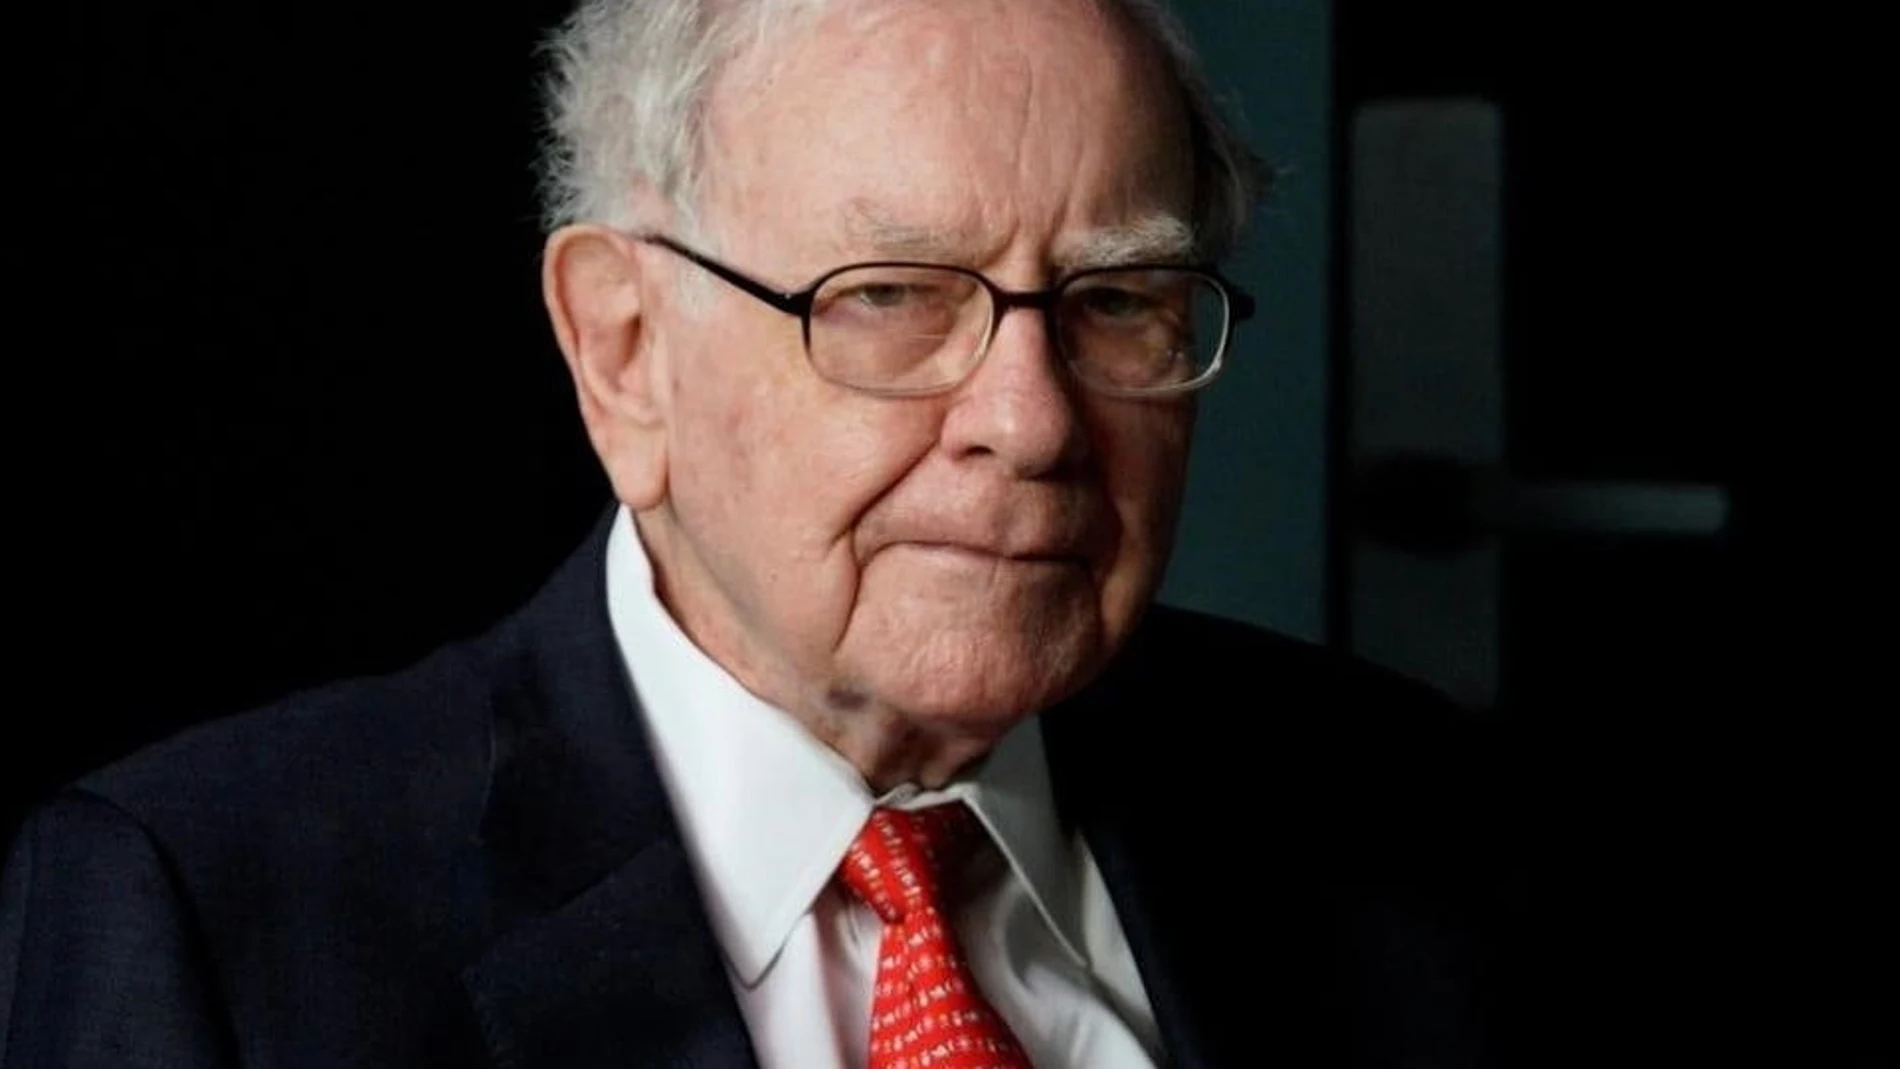 Las inversiones y movimientos empresariales tienen en Warren Buffet un pionero